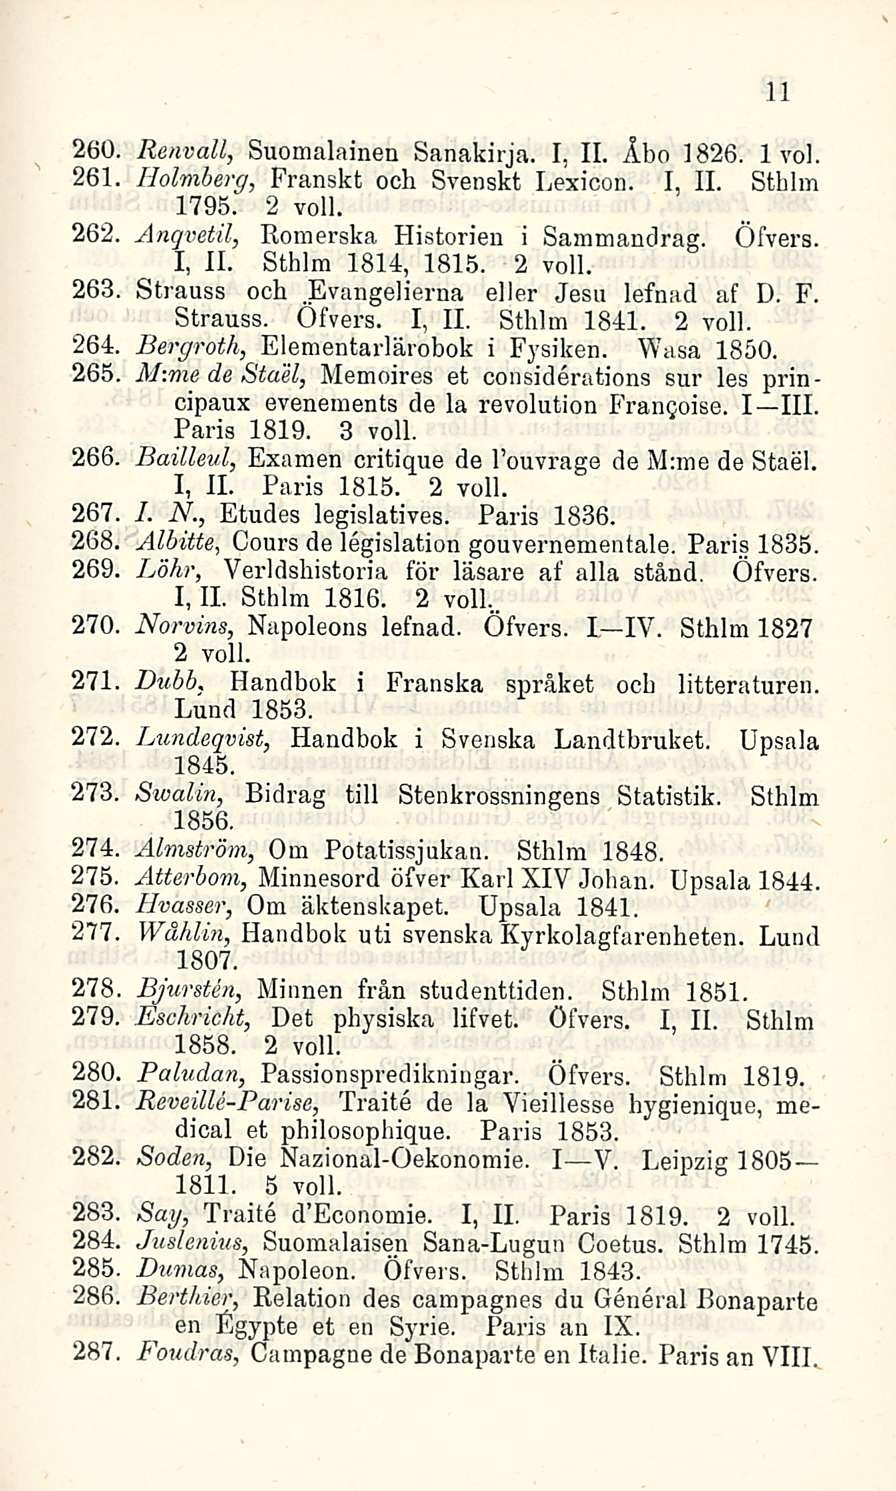 260. Renvall, Suomalainen Sanakirja. I. 11. Åbo 1826. 1 voi. 261 Holmberg, Franskt och Svensk! Lexicon. I, 11. Sthlm 1795. 2 voll. 262, Ånqvetil, Romerska Historien i Sammandrag. Öfvers.